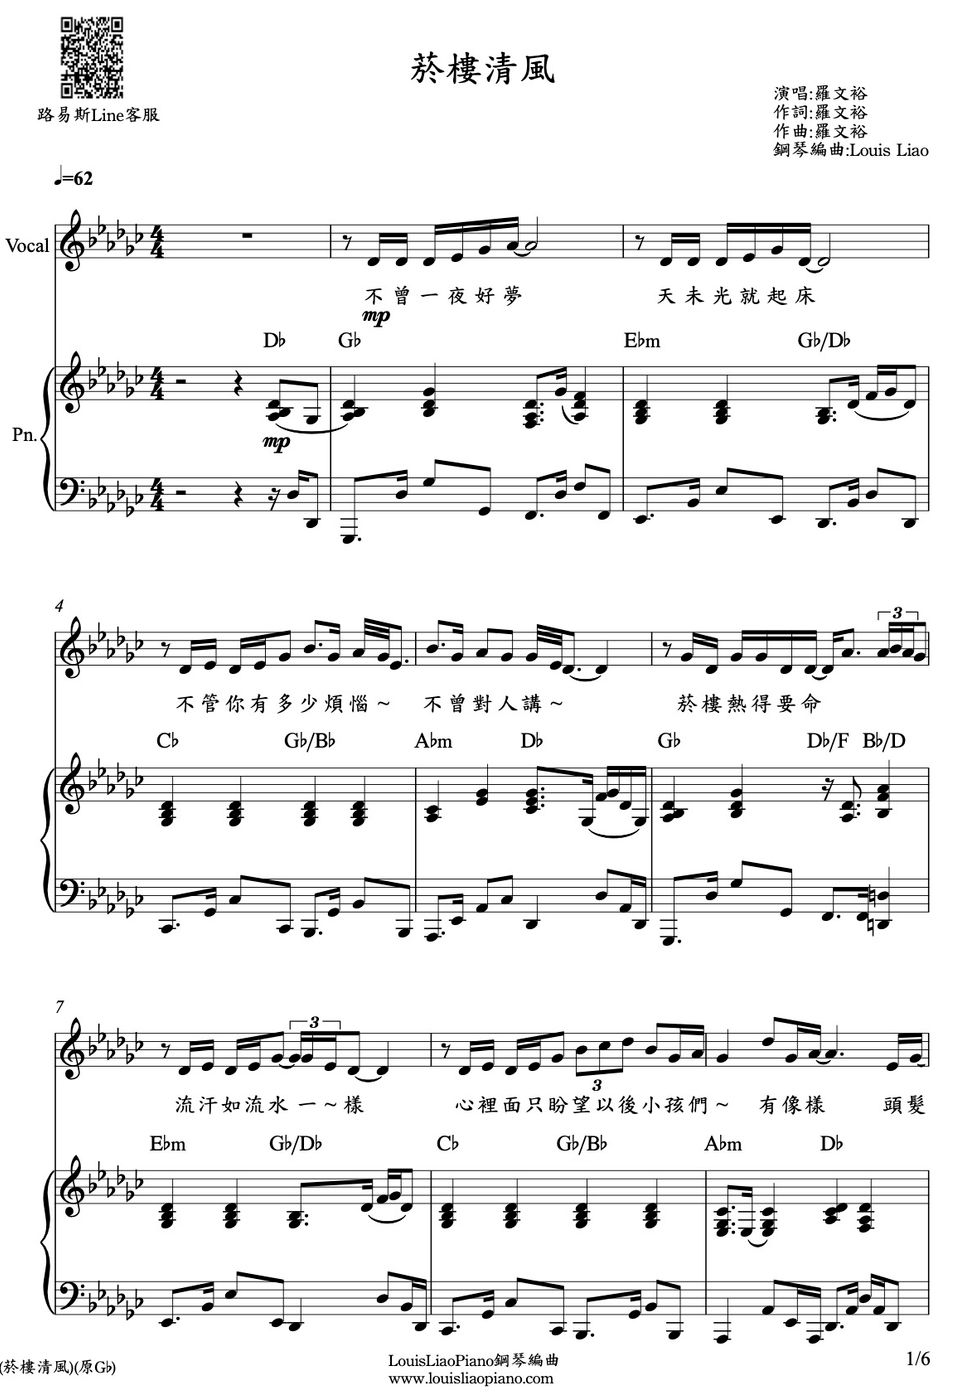 羅文裕 - 菸樓清風 (鋼琴伴奏版) by LouisLiao